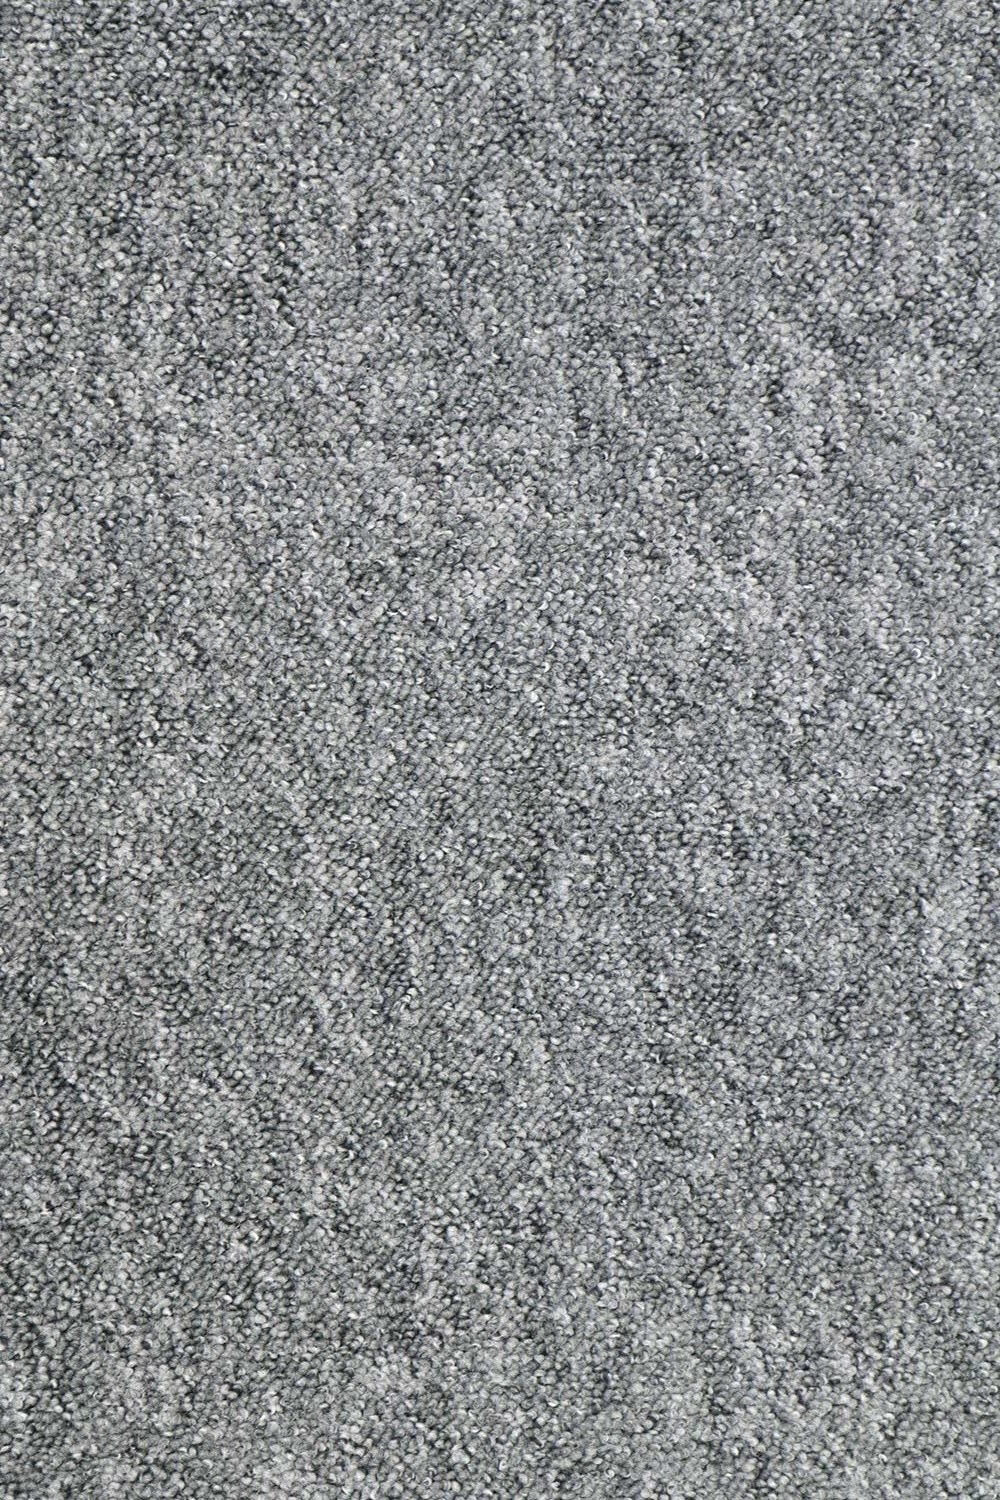 Metrážny koberec Imago 75 - Zvyšok 46x400 cm